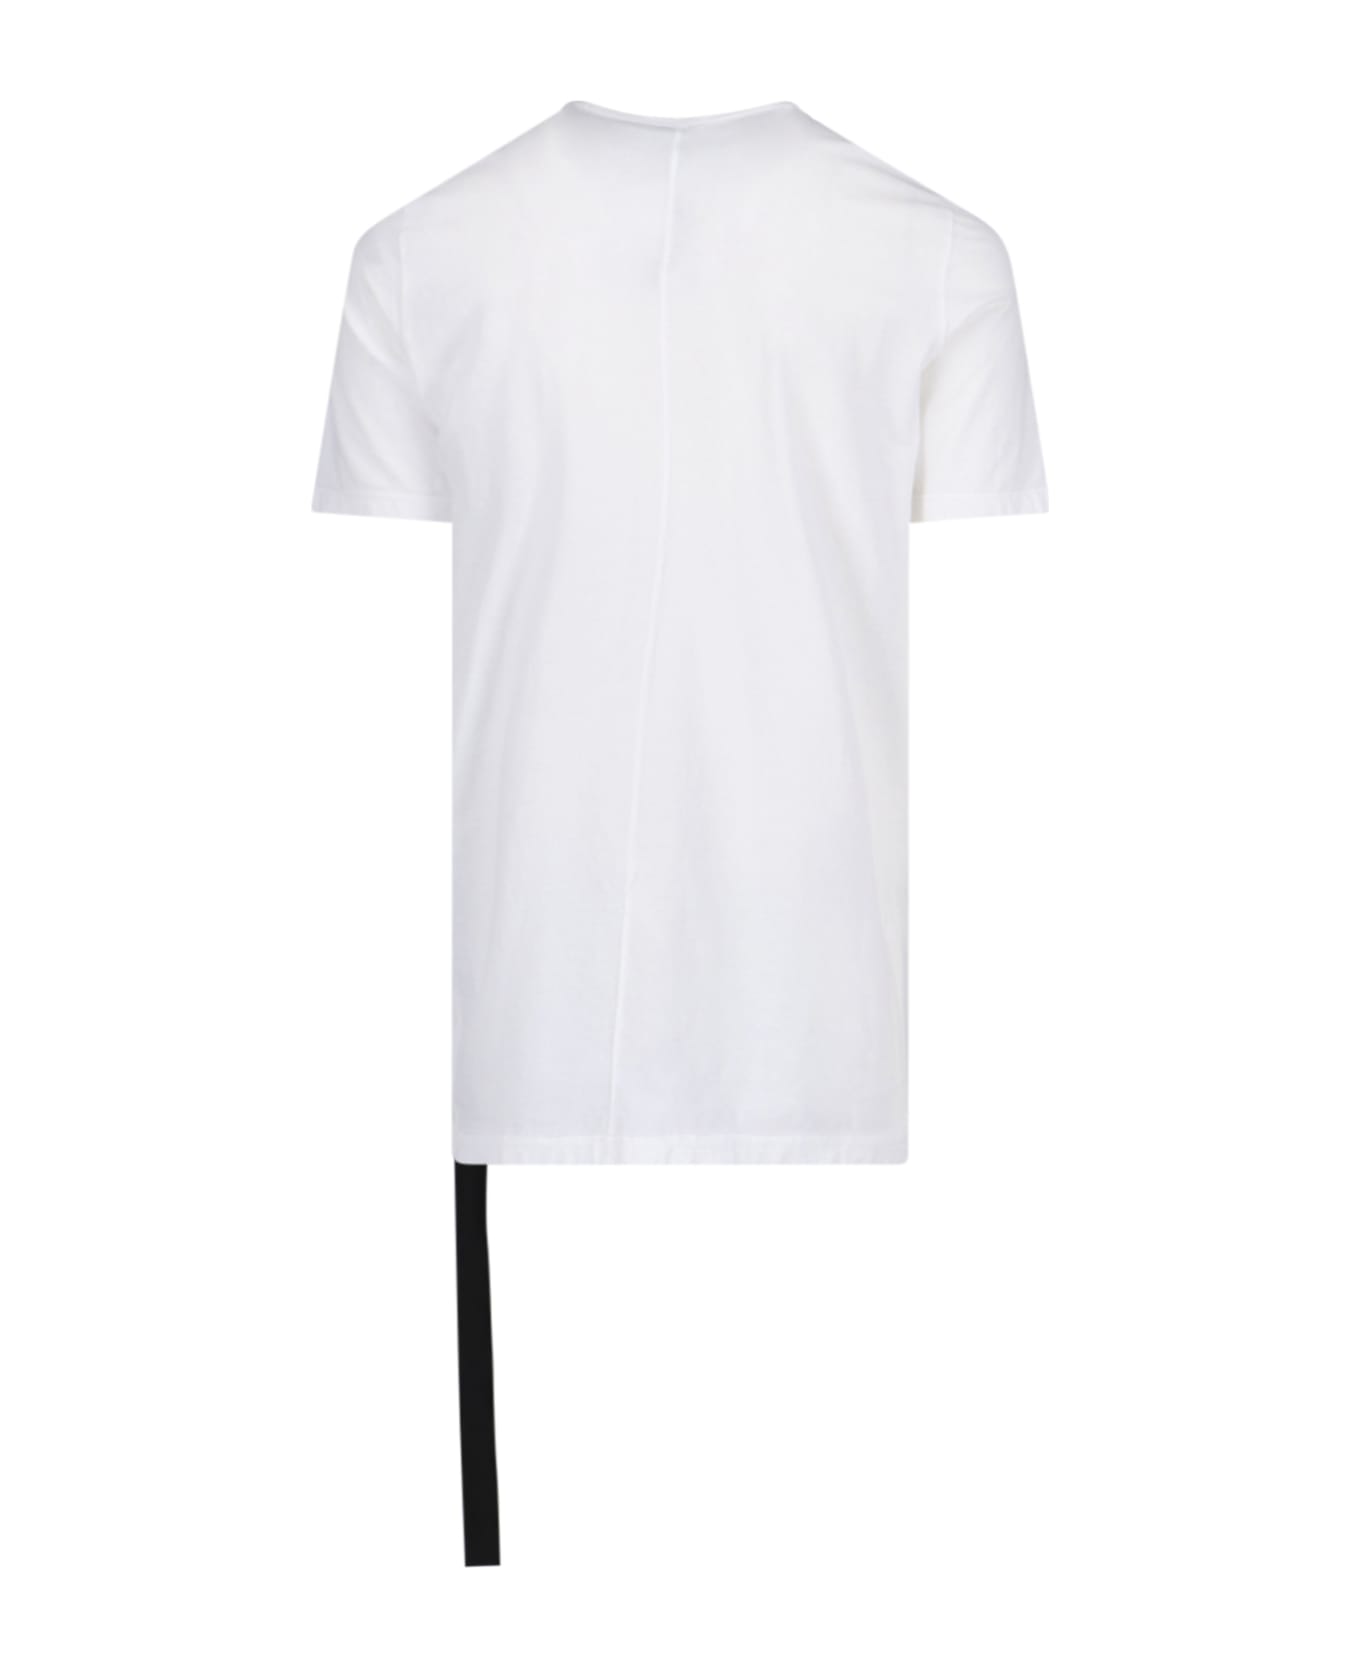 DRKSHDW "luxor Level" T-shirt - White